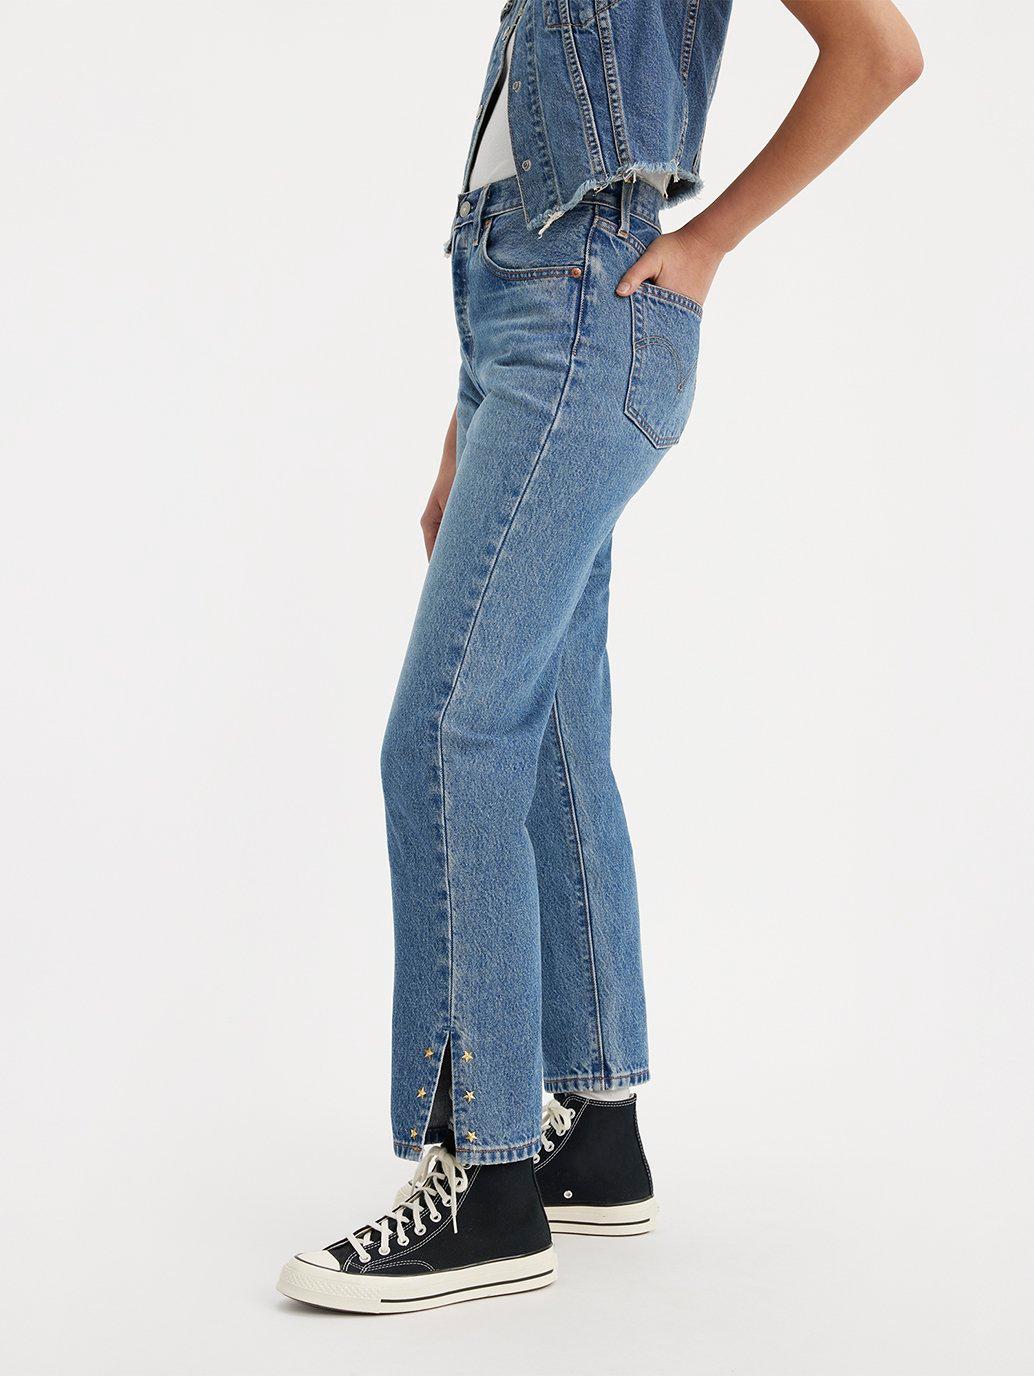 Buy Levi's® Women's 501® Original Cropped Jeans| Levi's® Official ...